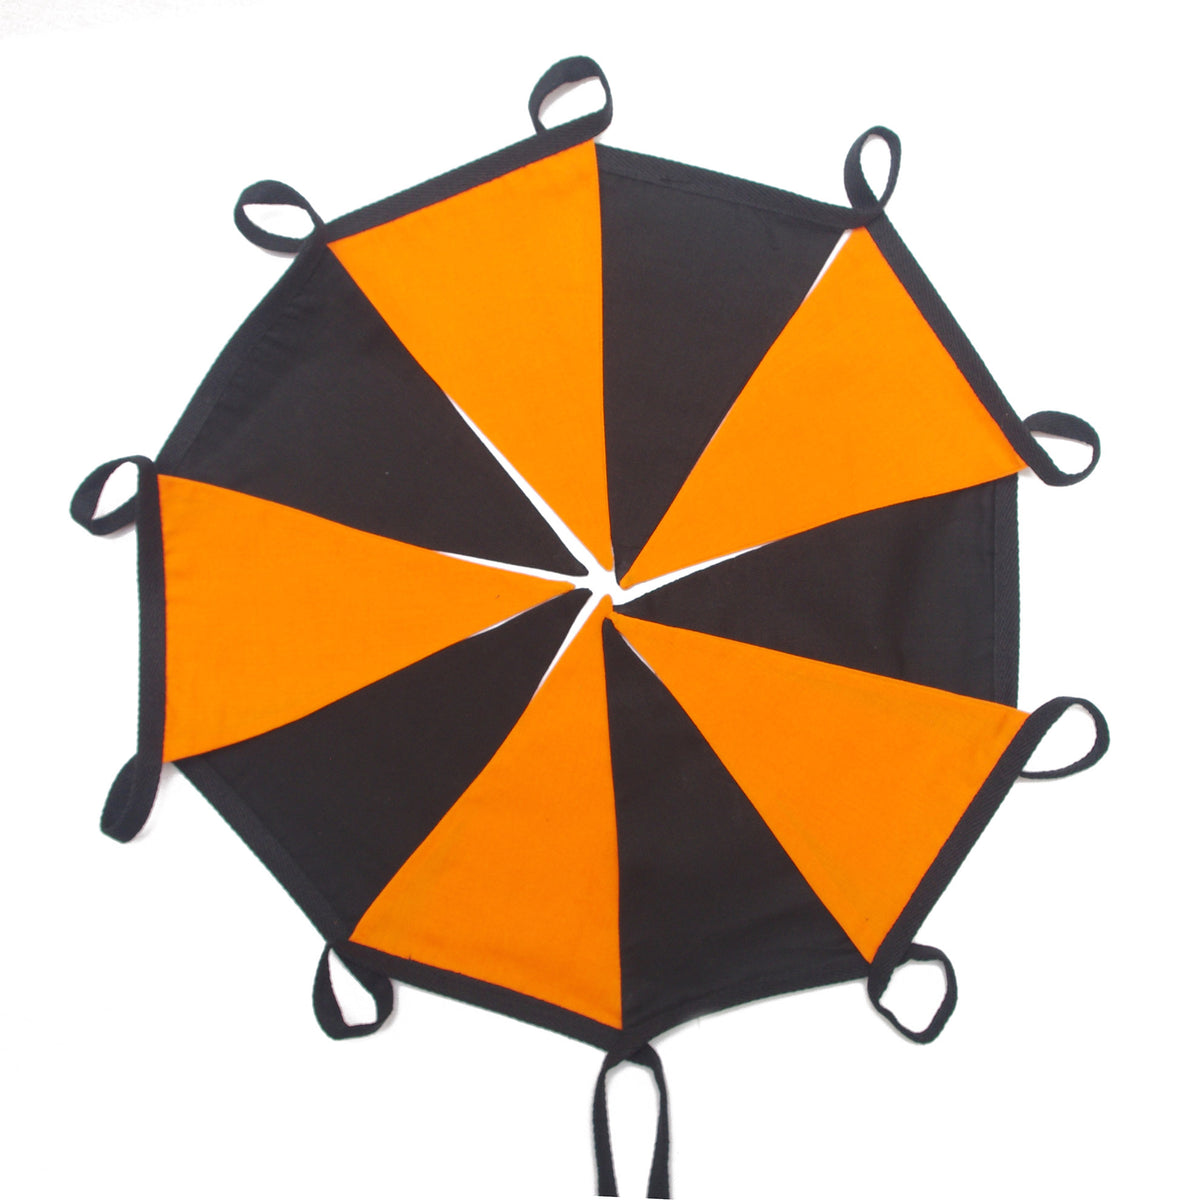 Wimpelkette aus doppellagigem Stoff in Orange und Schwarz mit 10 Flaggen